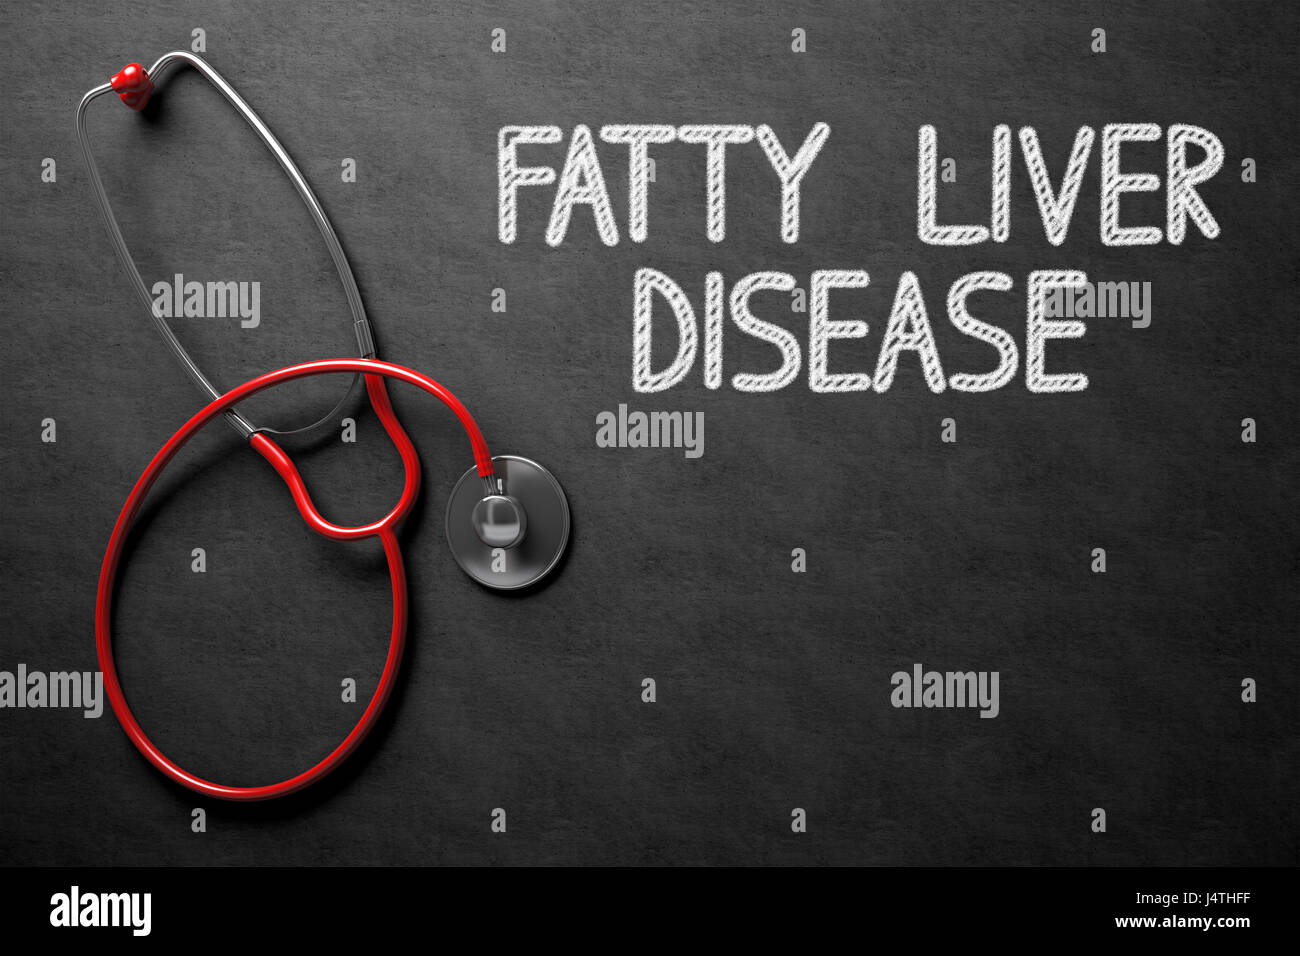 La enfermedad de hígado graso - Texto en la pizarra. Ilustración 3D. Foto de stock